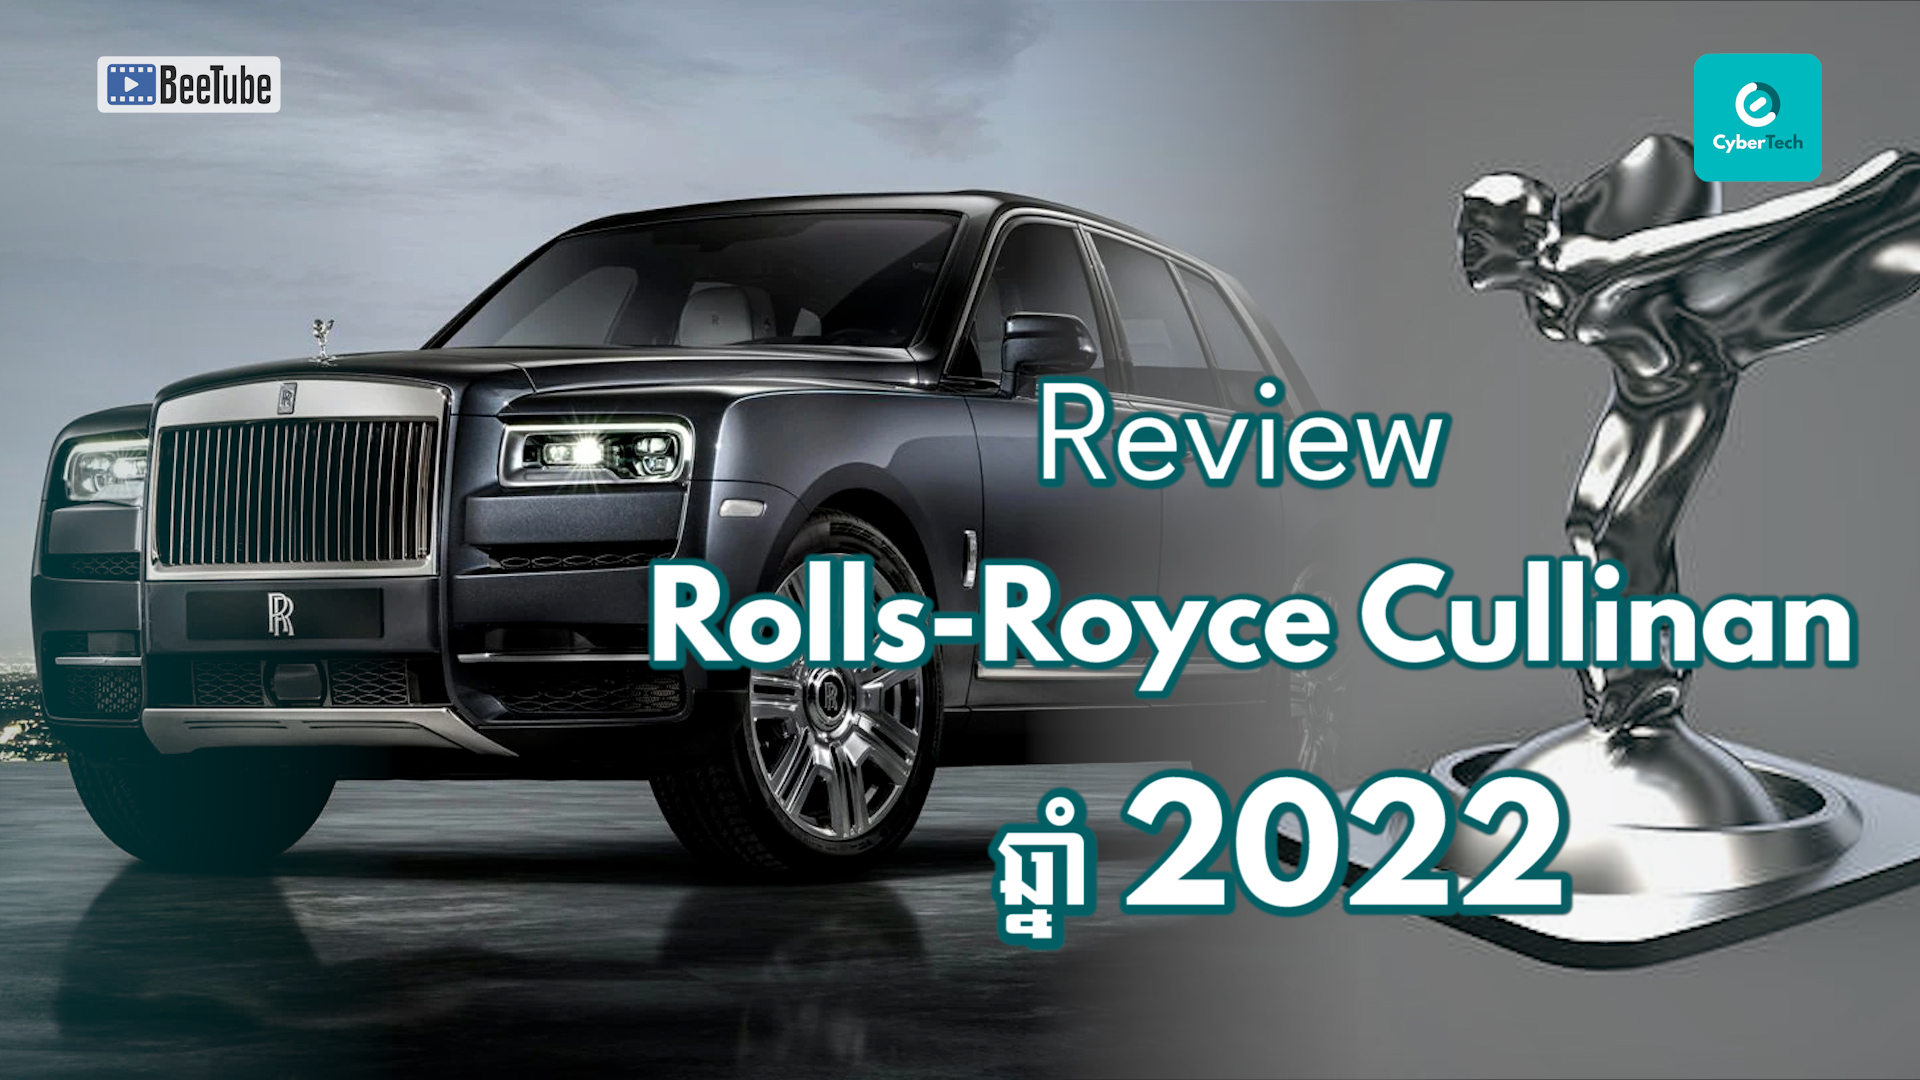 តោះ! ឥឡូវមកនេះមក Review Rolls-Royce Cullinan ឆ្នាំ 2022 វិញម្តង!